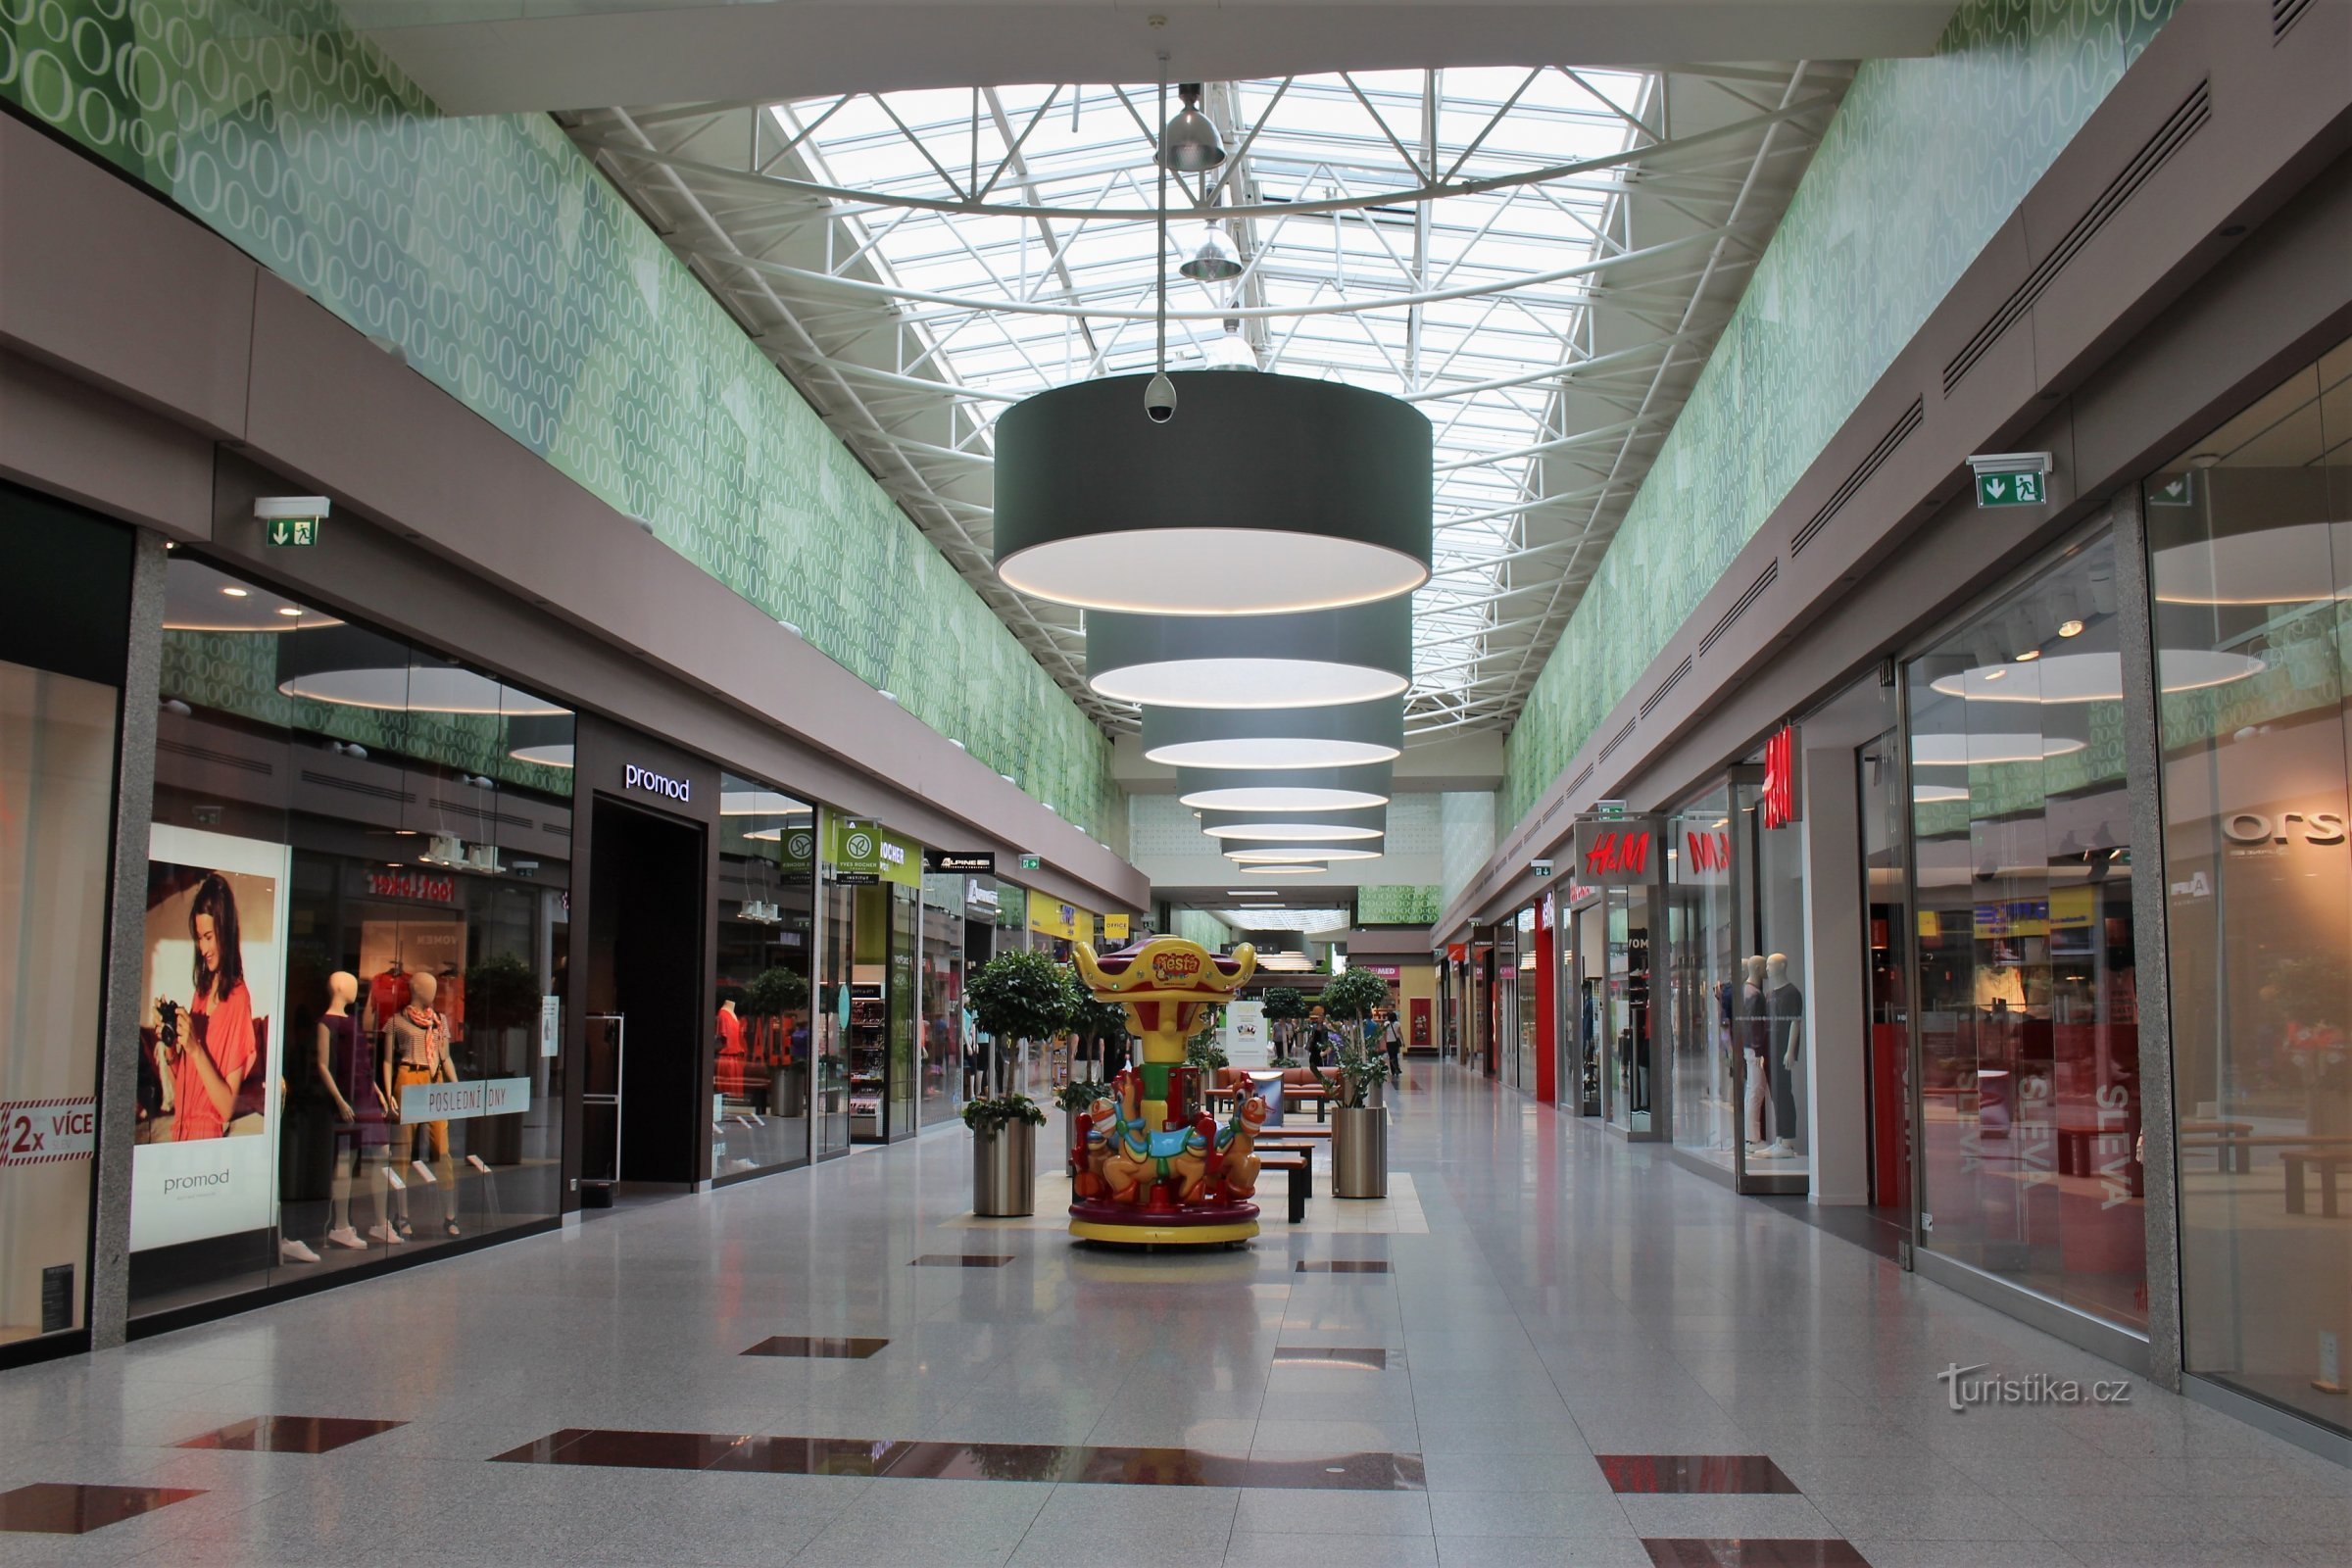 Shopping center interior